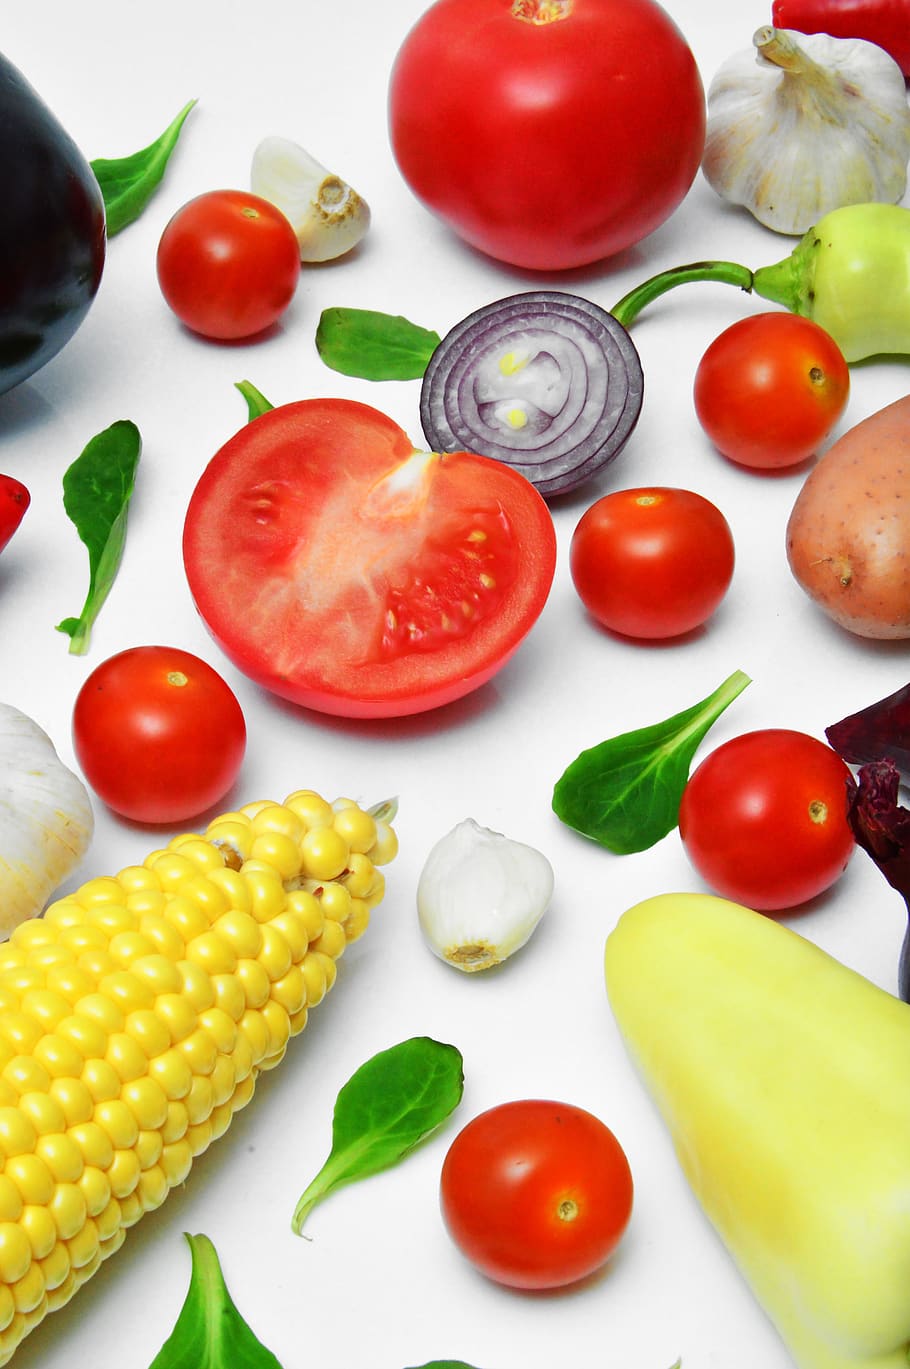 legumes, pimenta, tomate cebola gokhagyma, roxo, vitaminas, vegetariano, comida, saudável, cru, verde